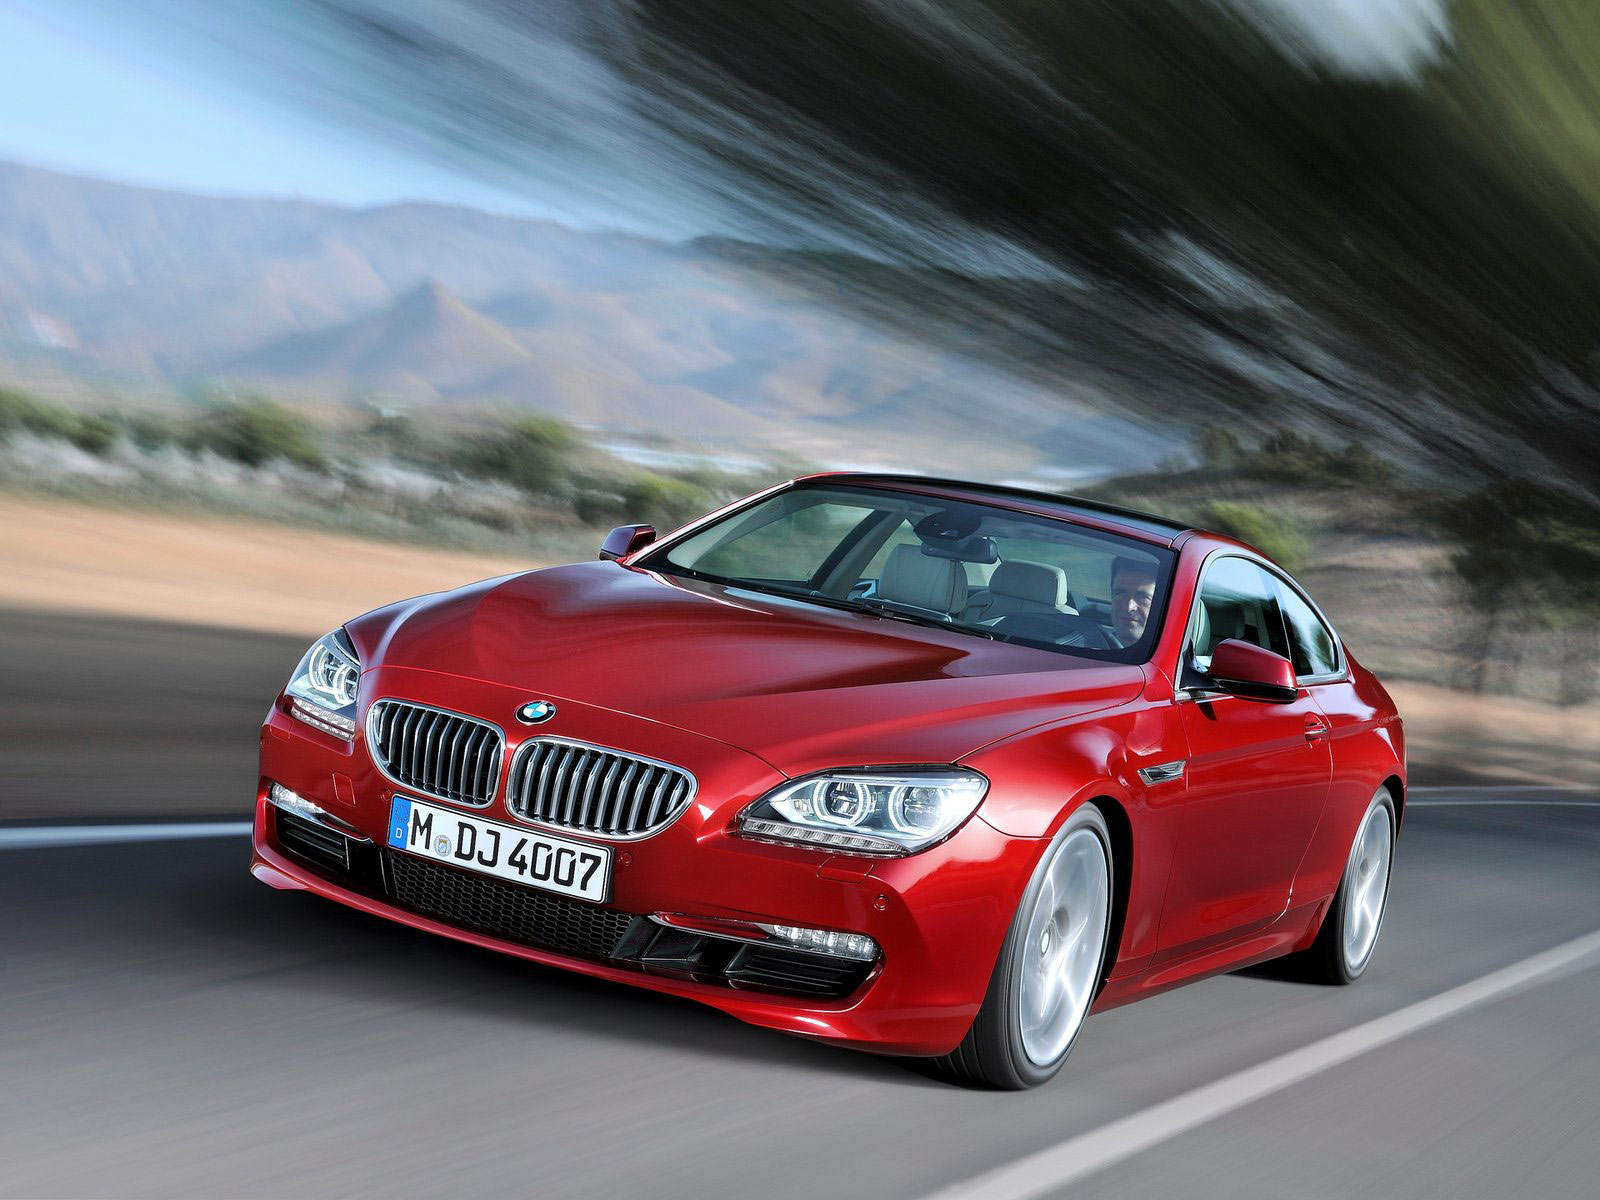  Harga  Mobil  BMW  2013 Terbaru Motor Model Terbaru